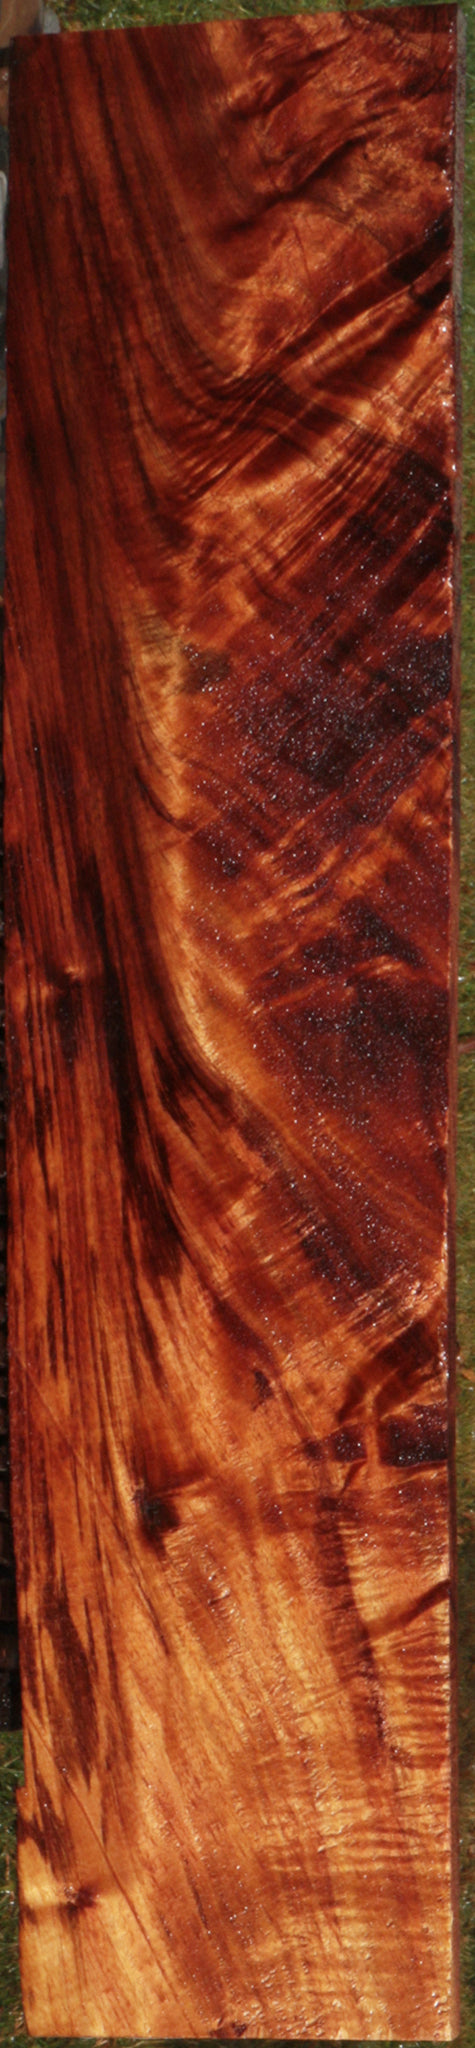 Exhibition Crotchwood Hawaiian Koa Lumber